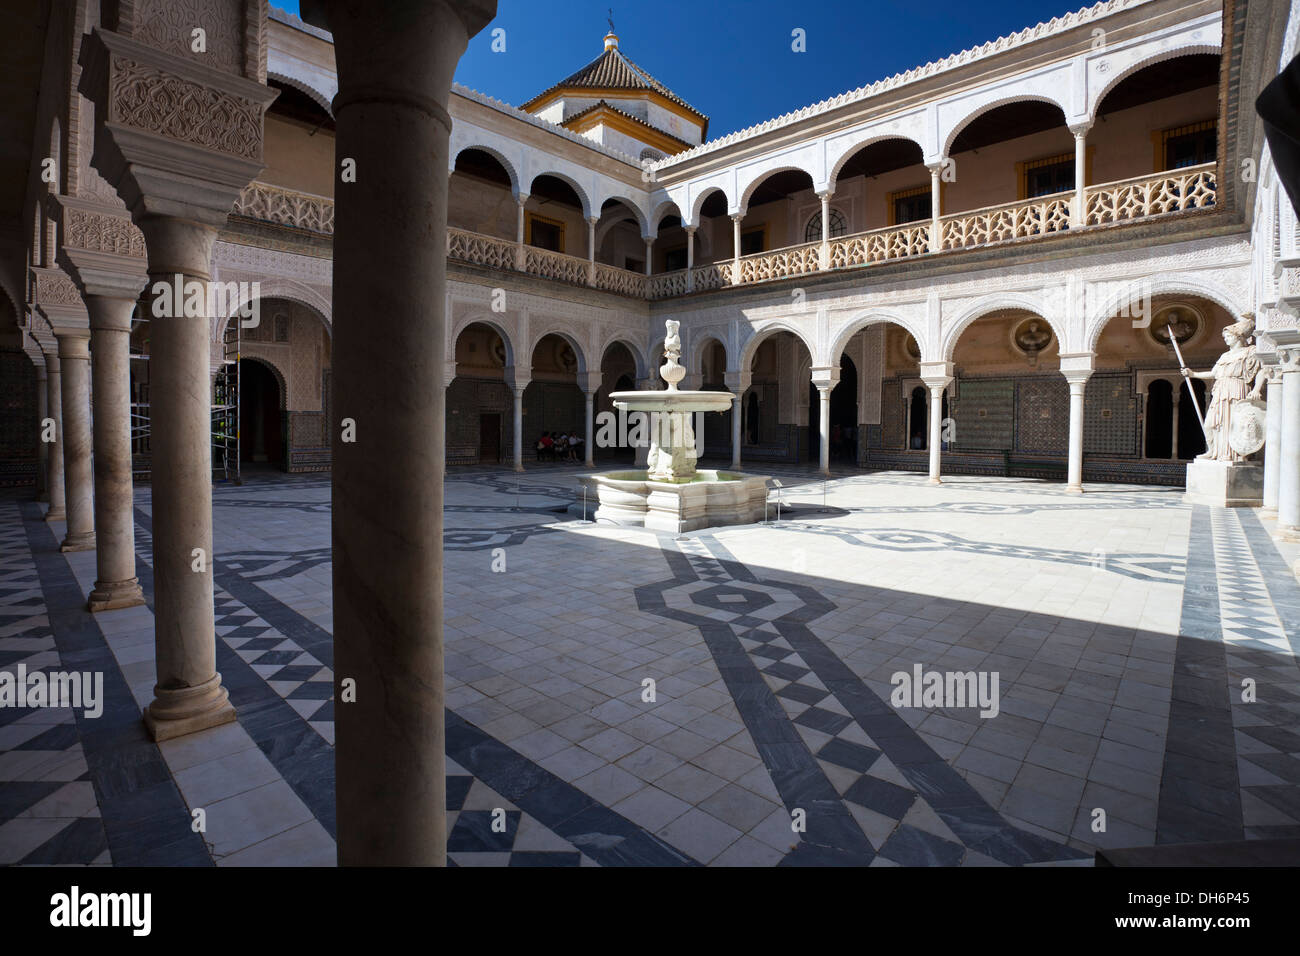 Casa de Pilatos in Seville, Spain Stock Photo